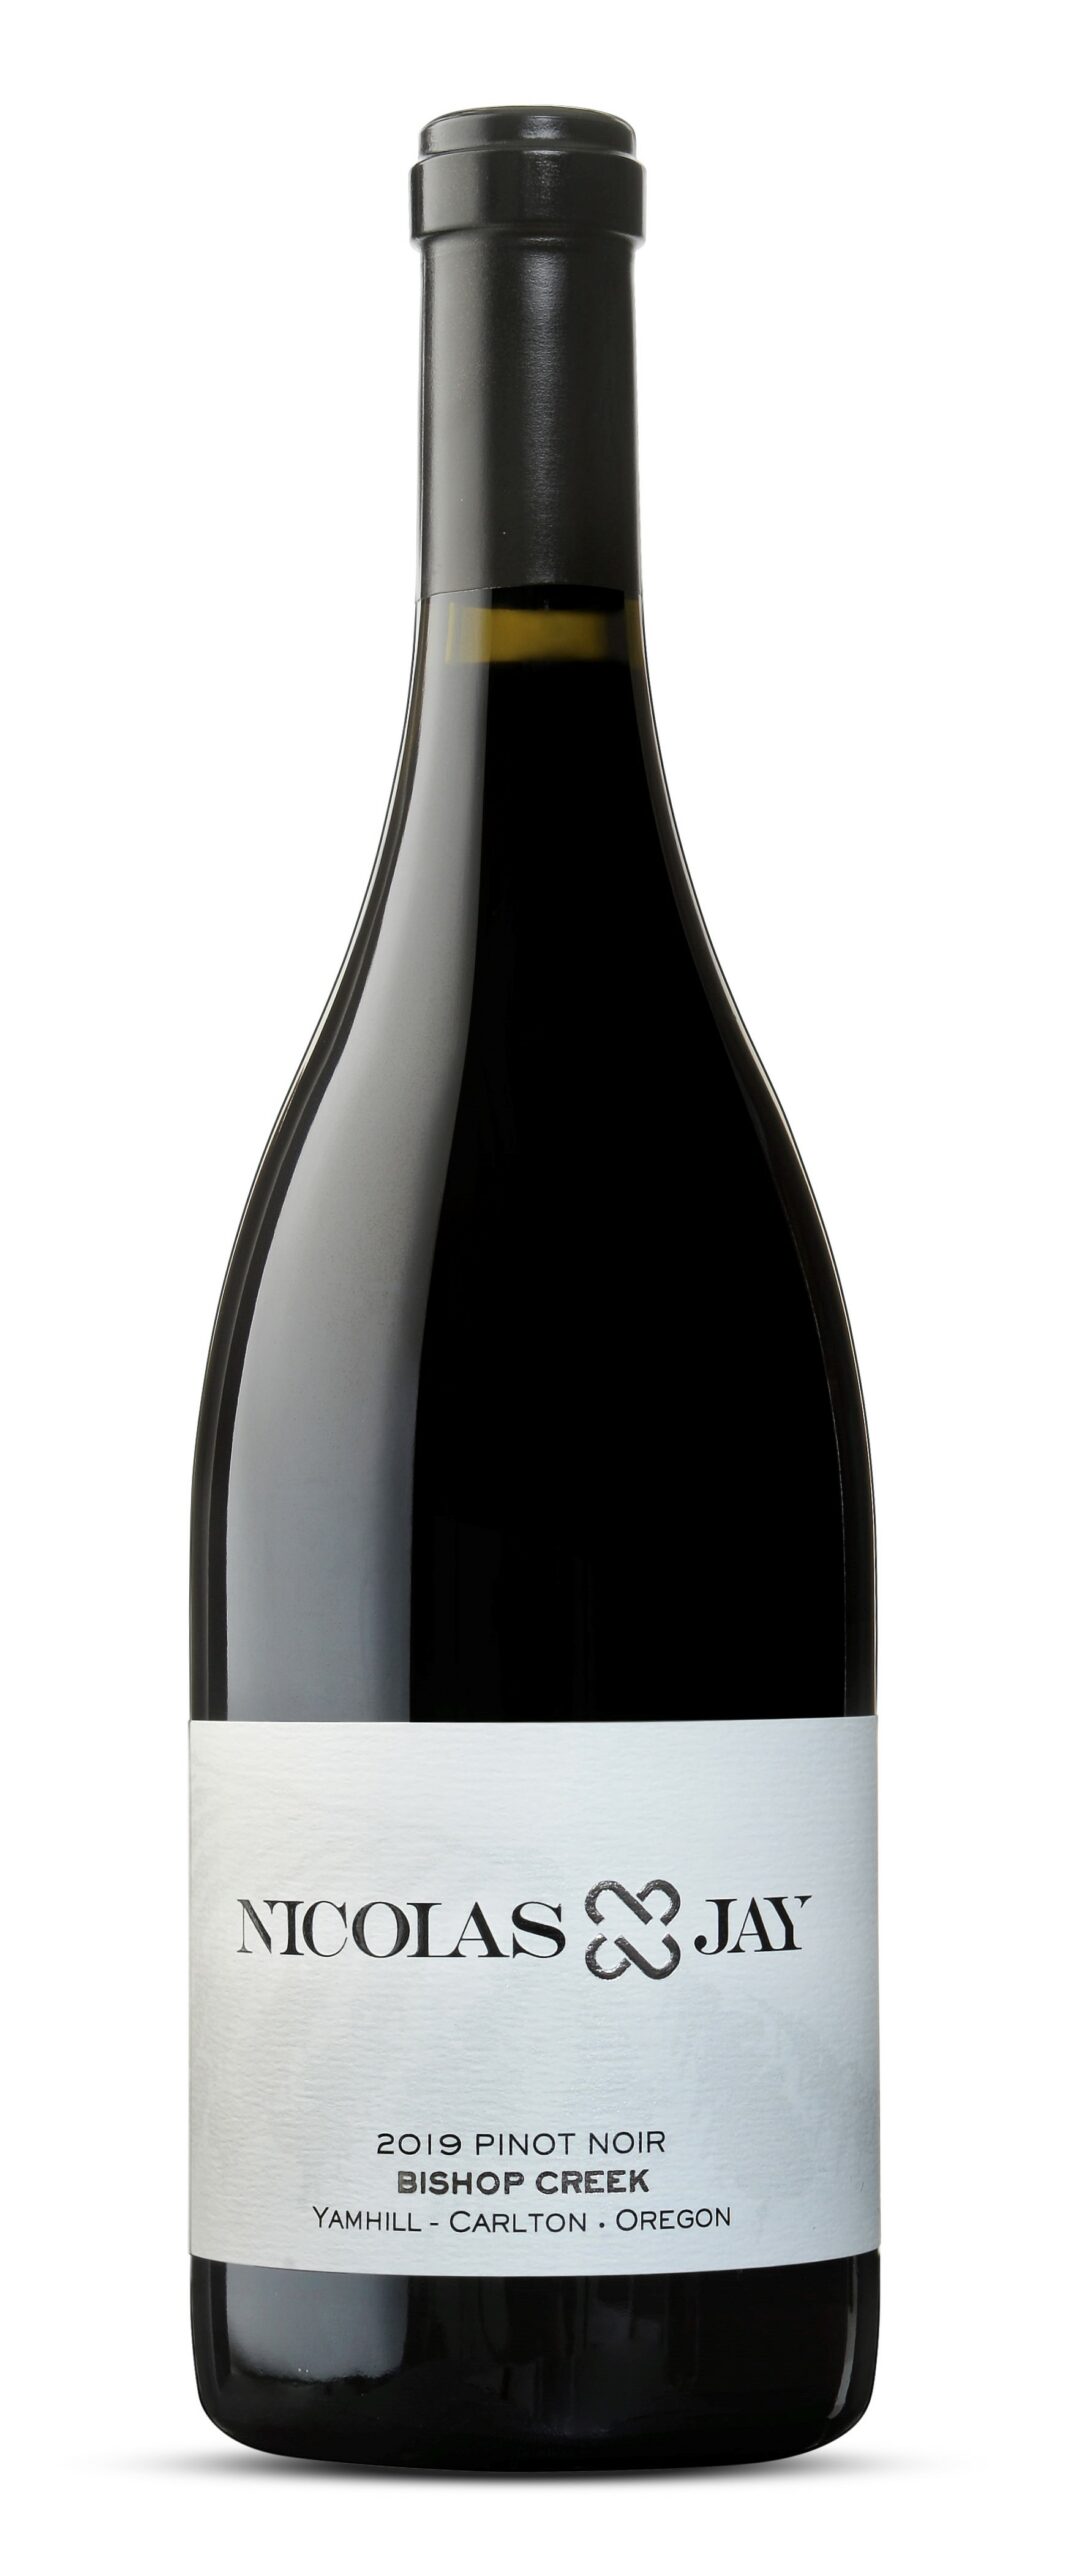 Nicolas-Jay Carlton Estate Bishop Creek Vineyard Pinot Noir